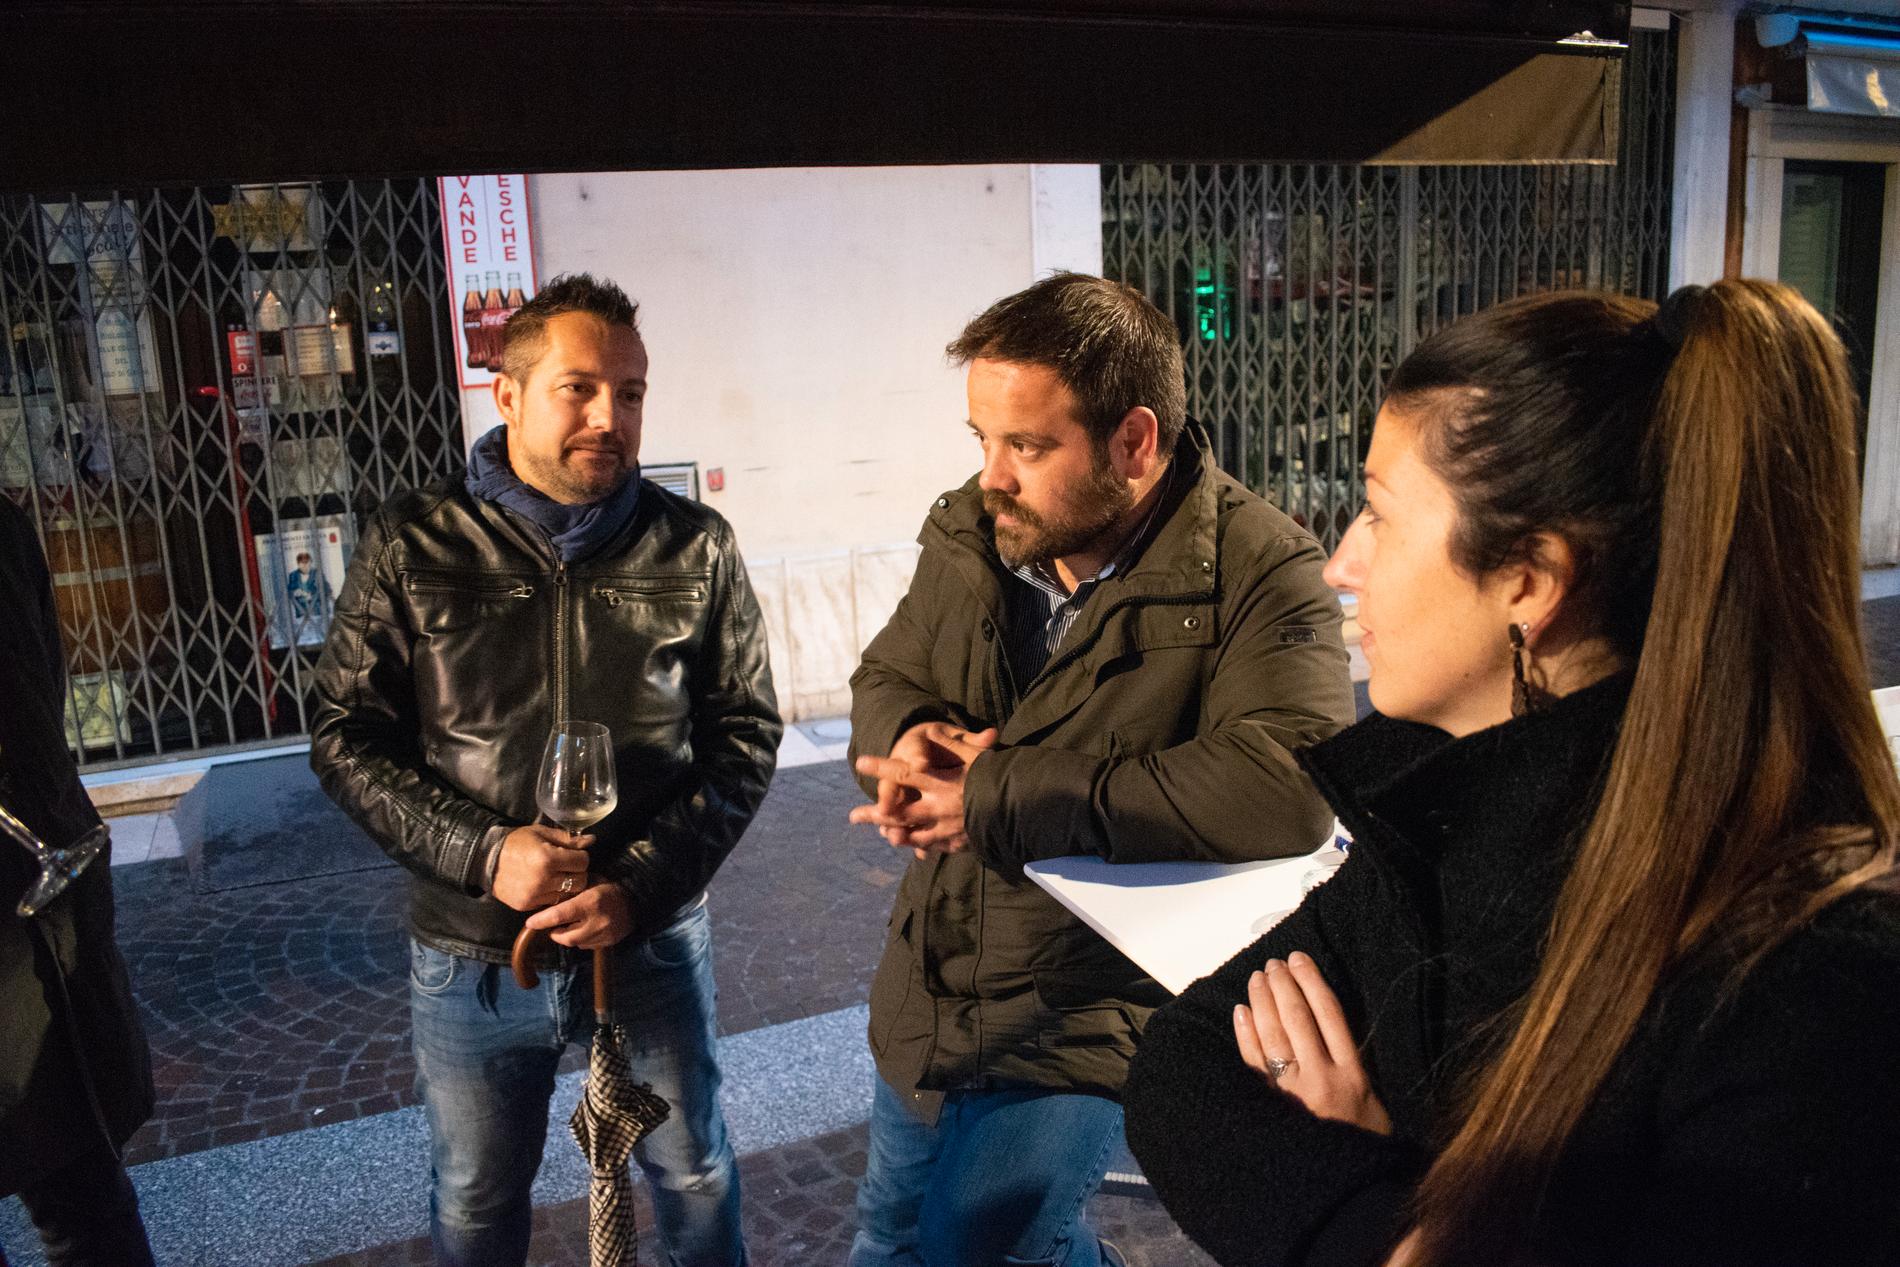 Barnaba Gottardi, till vänster, pratar med Francesco och Valeria. Han tycker att Europa borde dela på ansvaret för flyktingarna, särskilt eftersom Italiens ekonomi går på knäna.